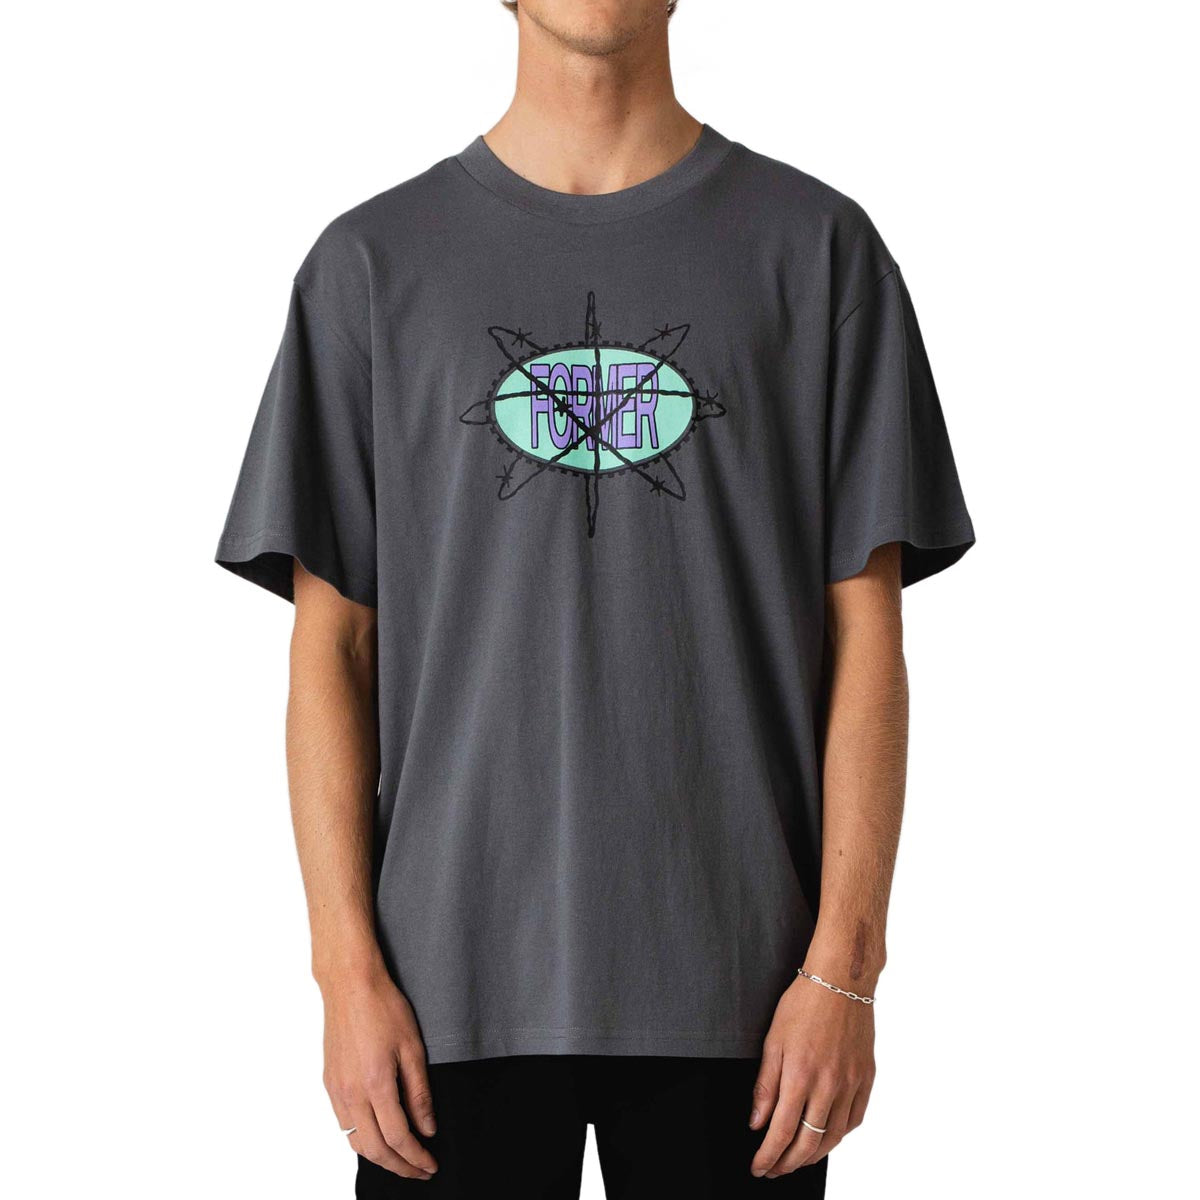 Former Utopic T-Shirt - Iron image 2